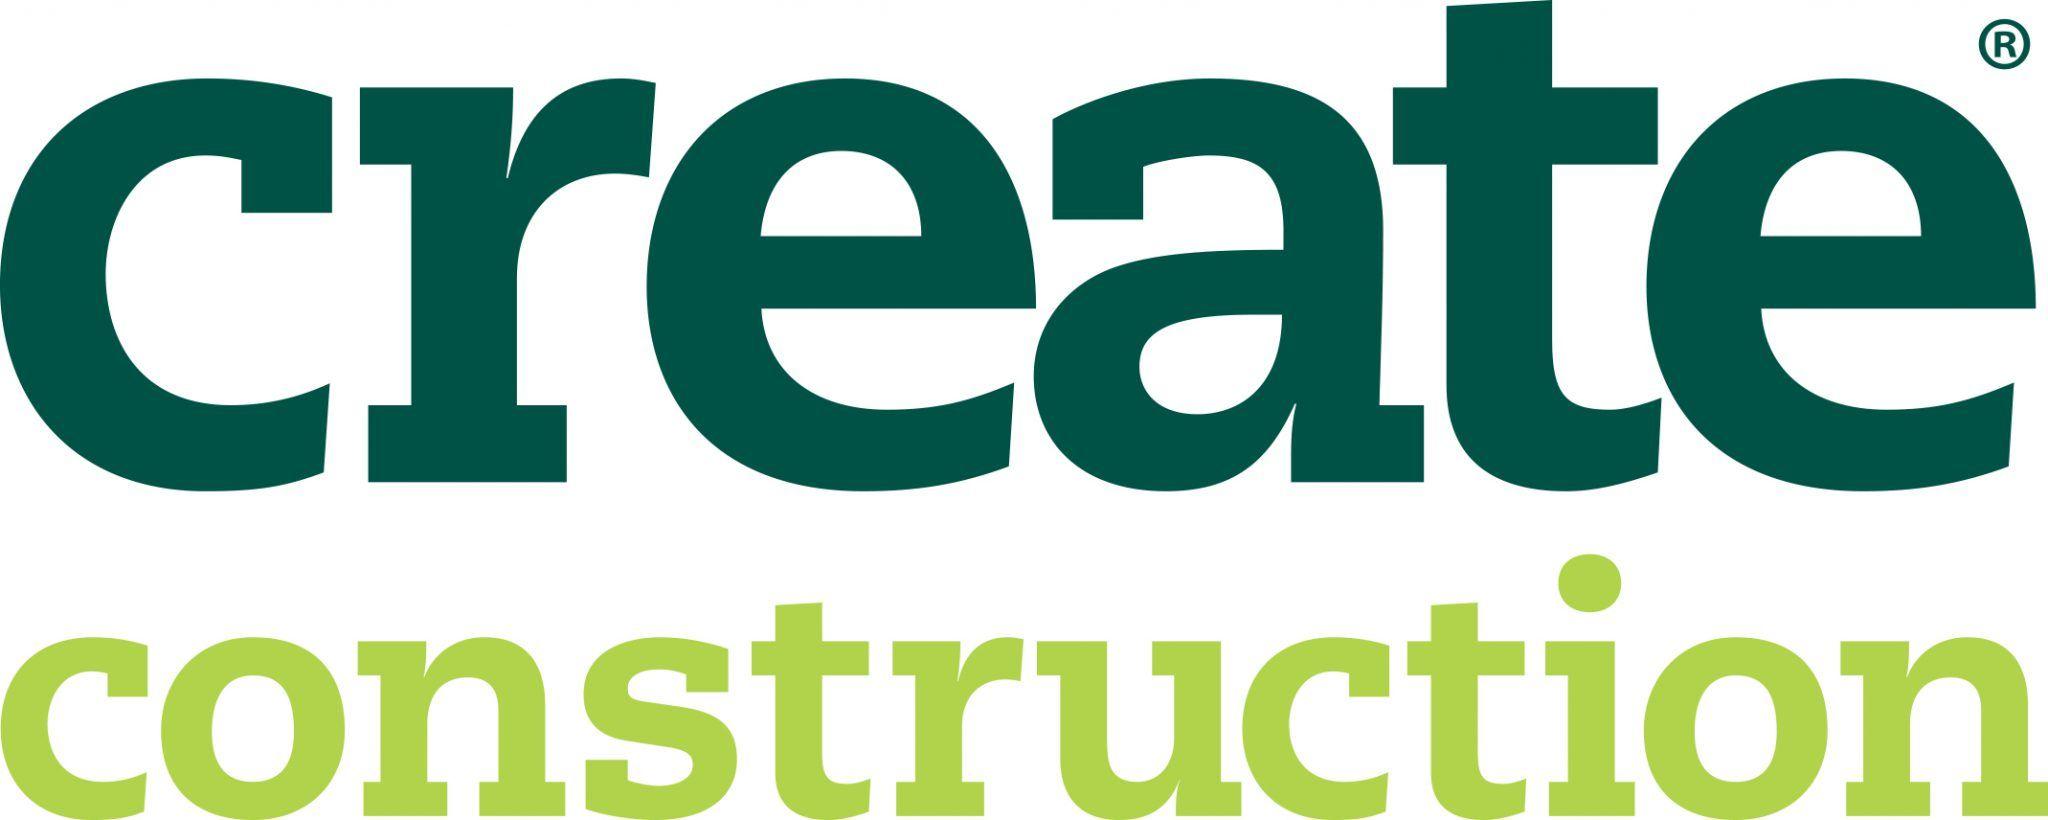 Create Construction Logo - Create Construction